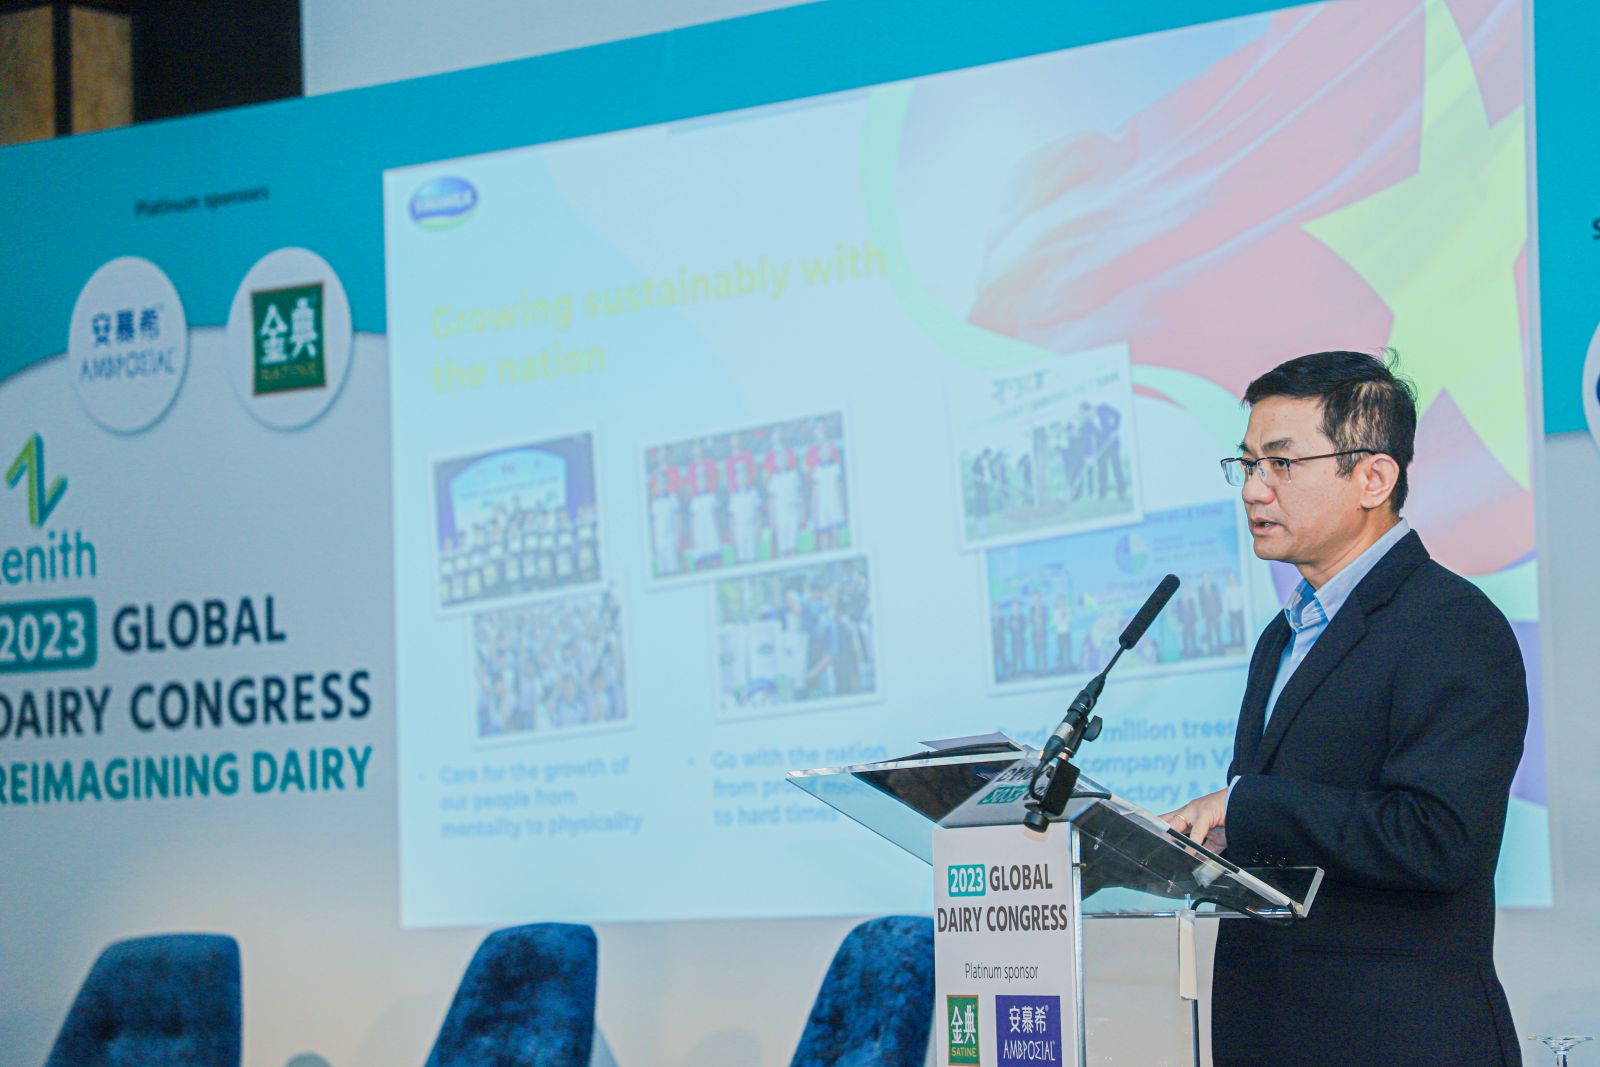 Ông Nguyễn Quang Trí - Giám đốc Điều hành Marketing, đại diện Vinamilk - doanh nghiệp duy nhất đến từ khu vực Đông Nam Á trình bày tham luận tại Hội nghị năm nay.